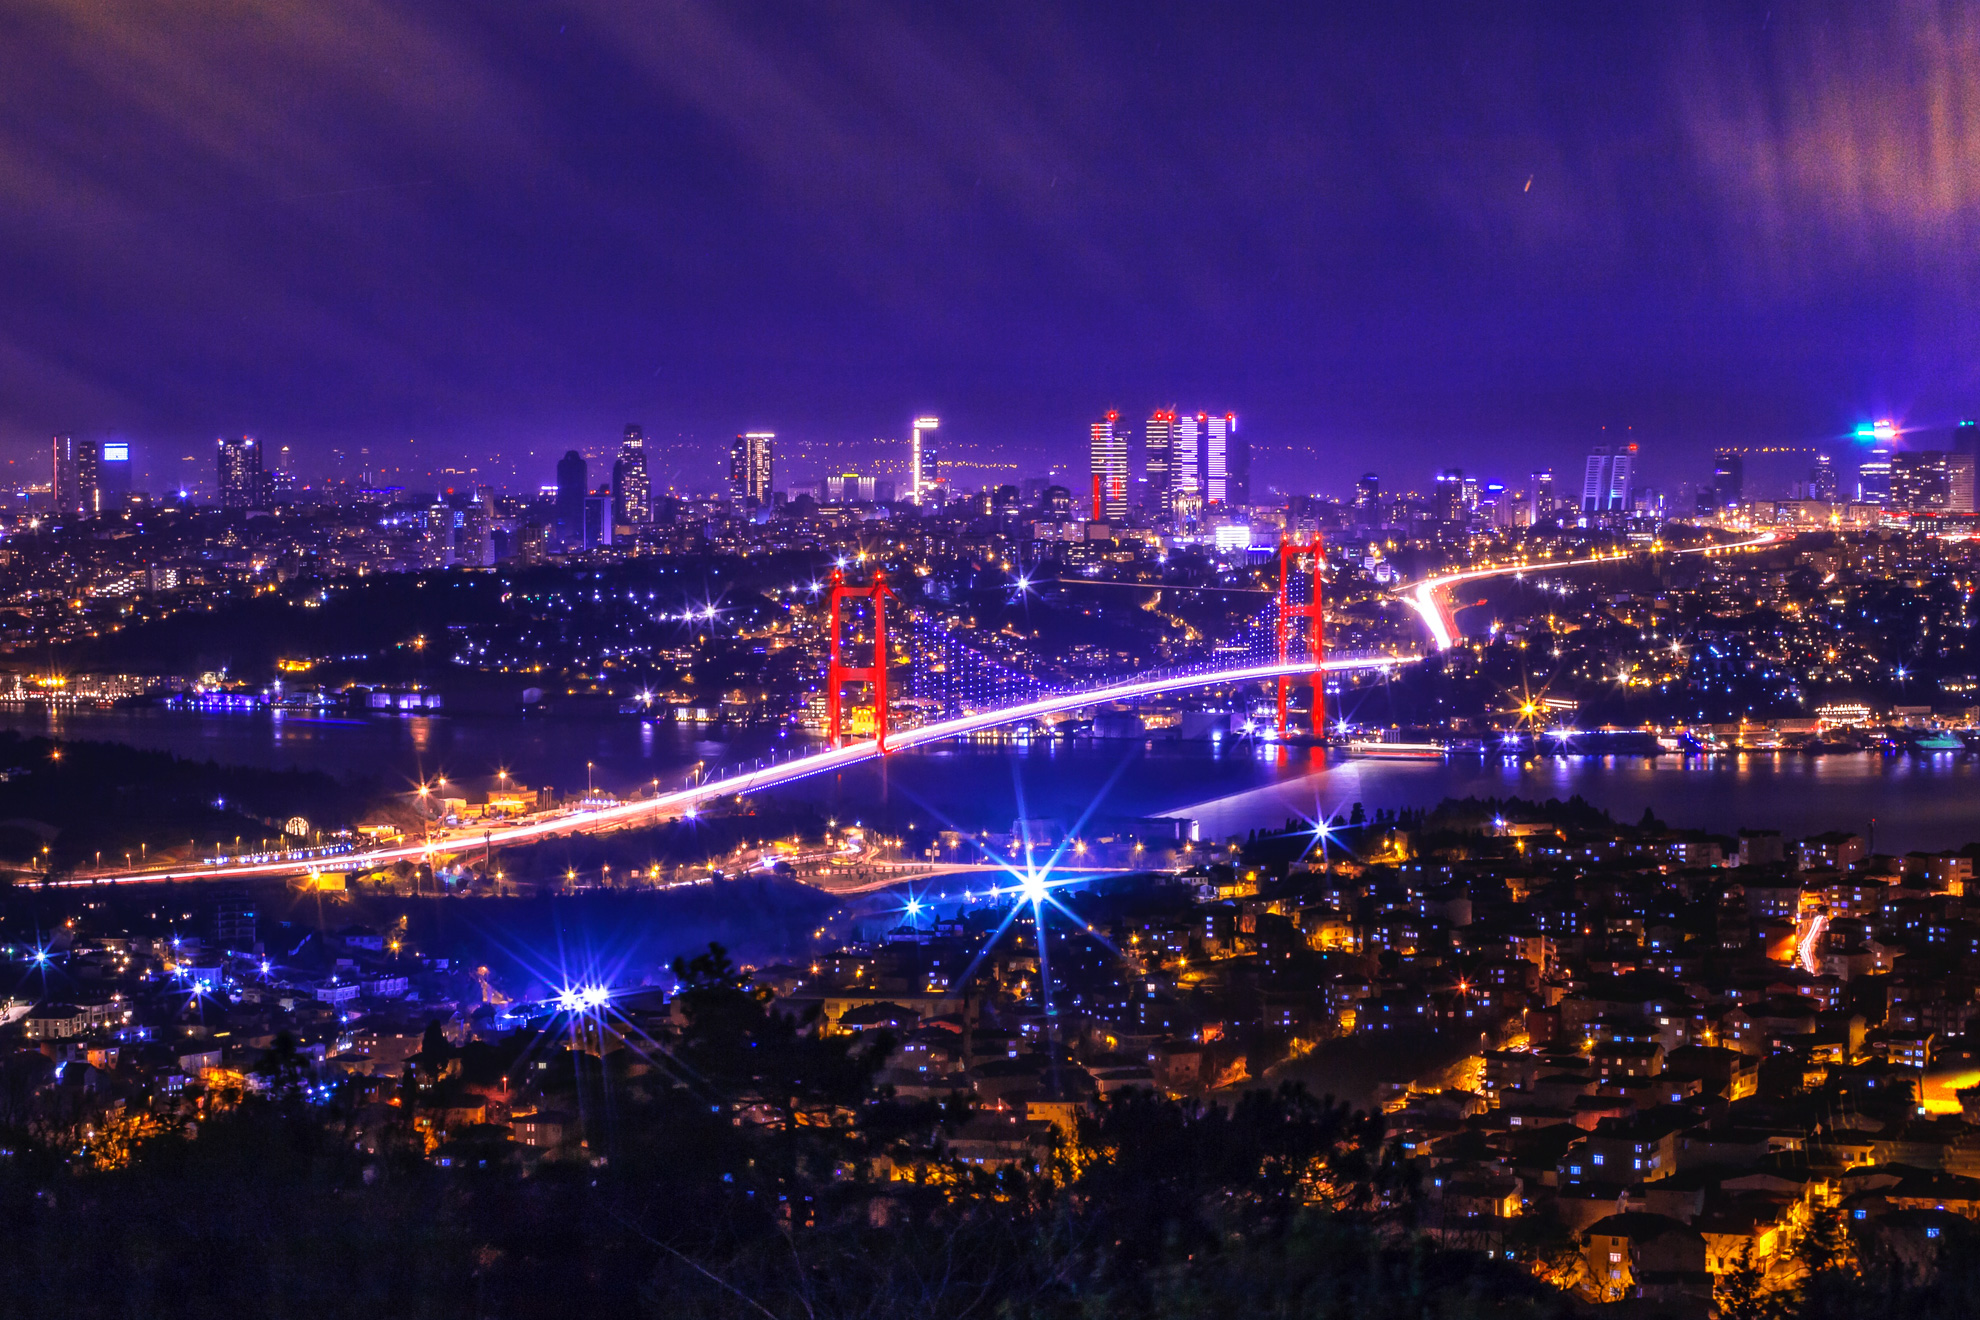 Фестивалът на лалето в Истанбул, 2 нощувки - Нощен Истанбул, Турция - Night Istanbul, Turkey